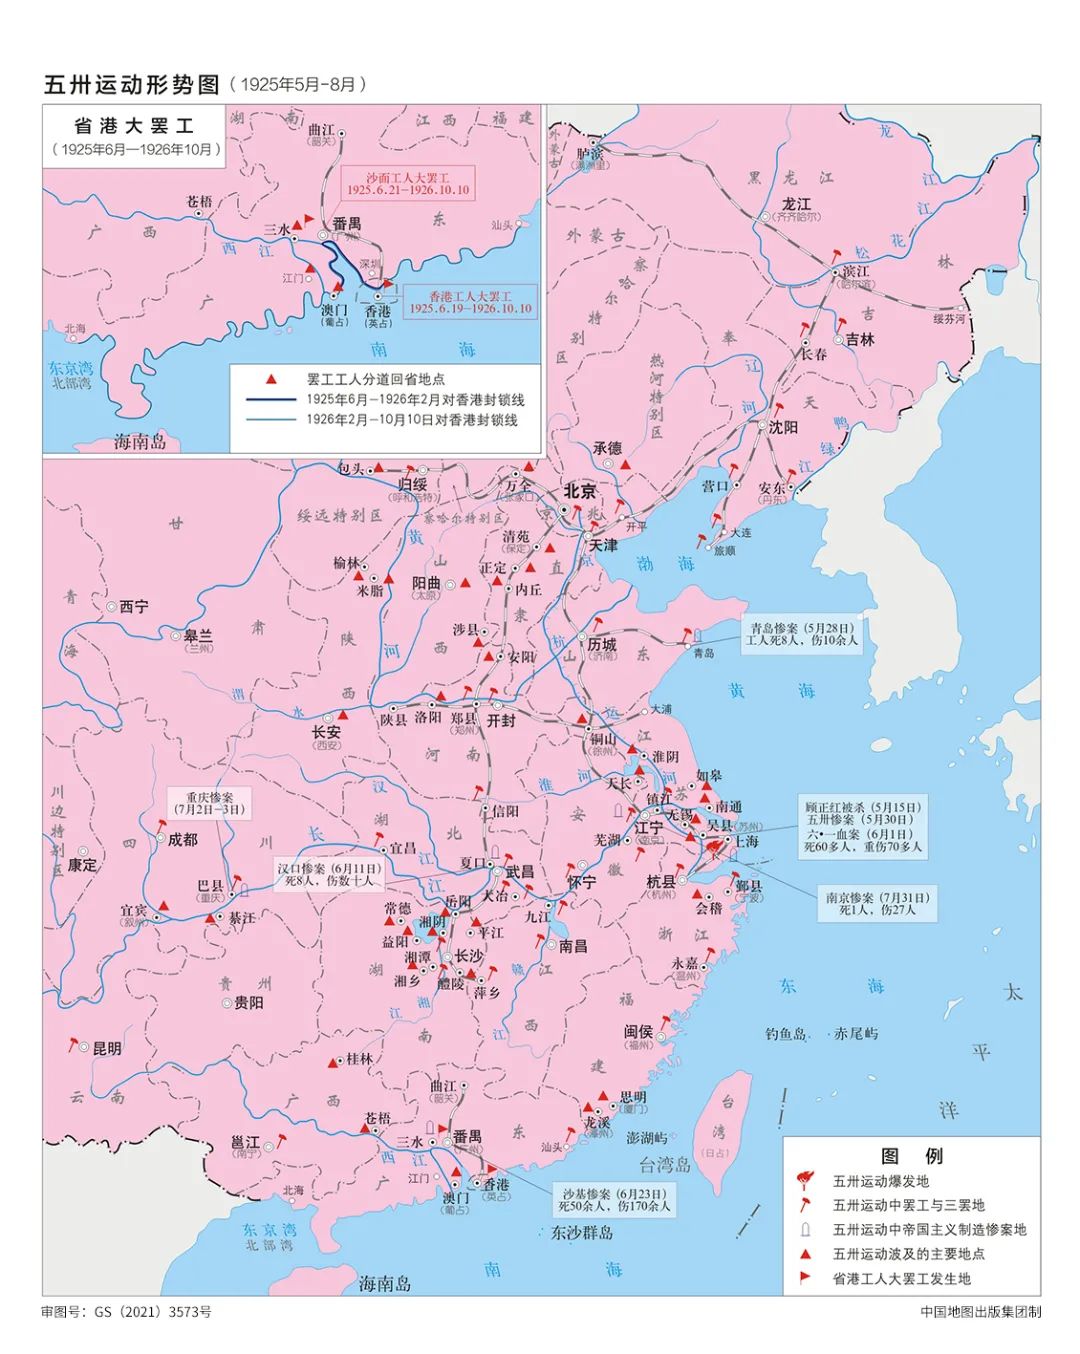 审图号:gs(2021)3573 五卅运动形势图 中国地图出版集团供图